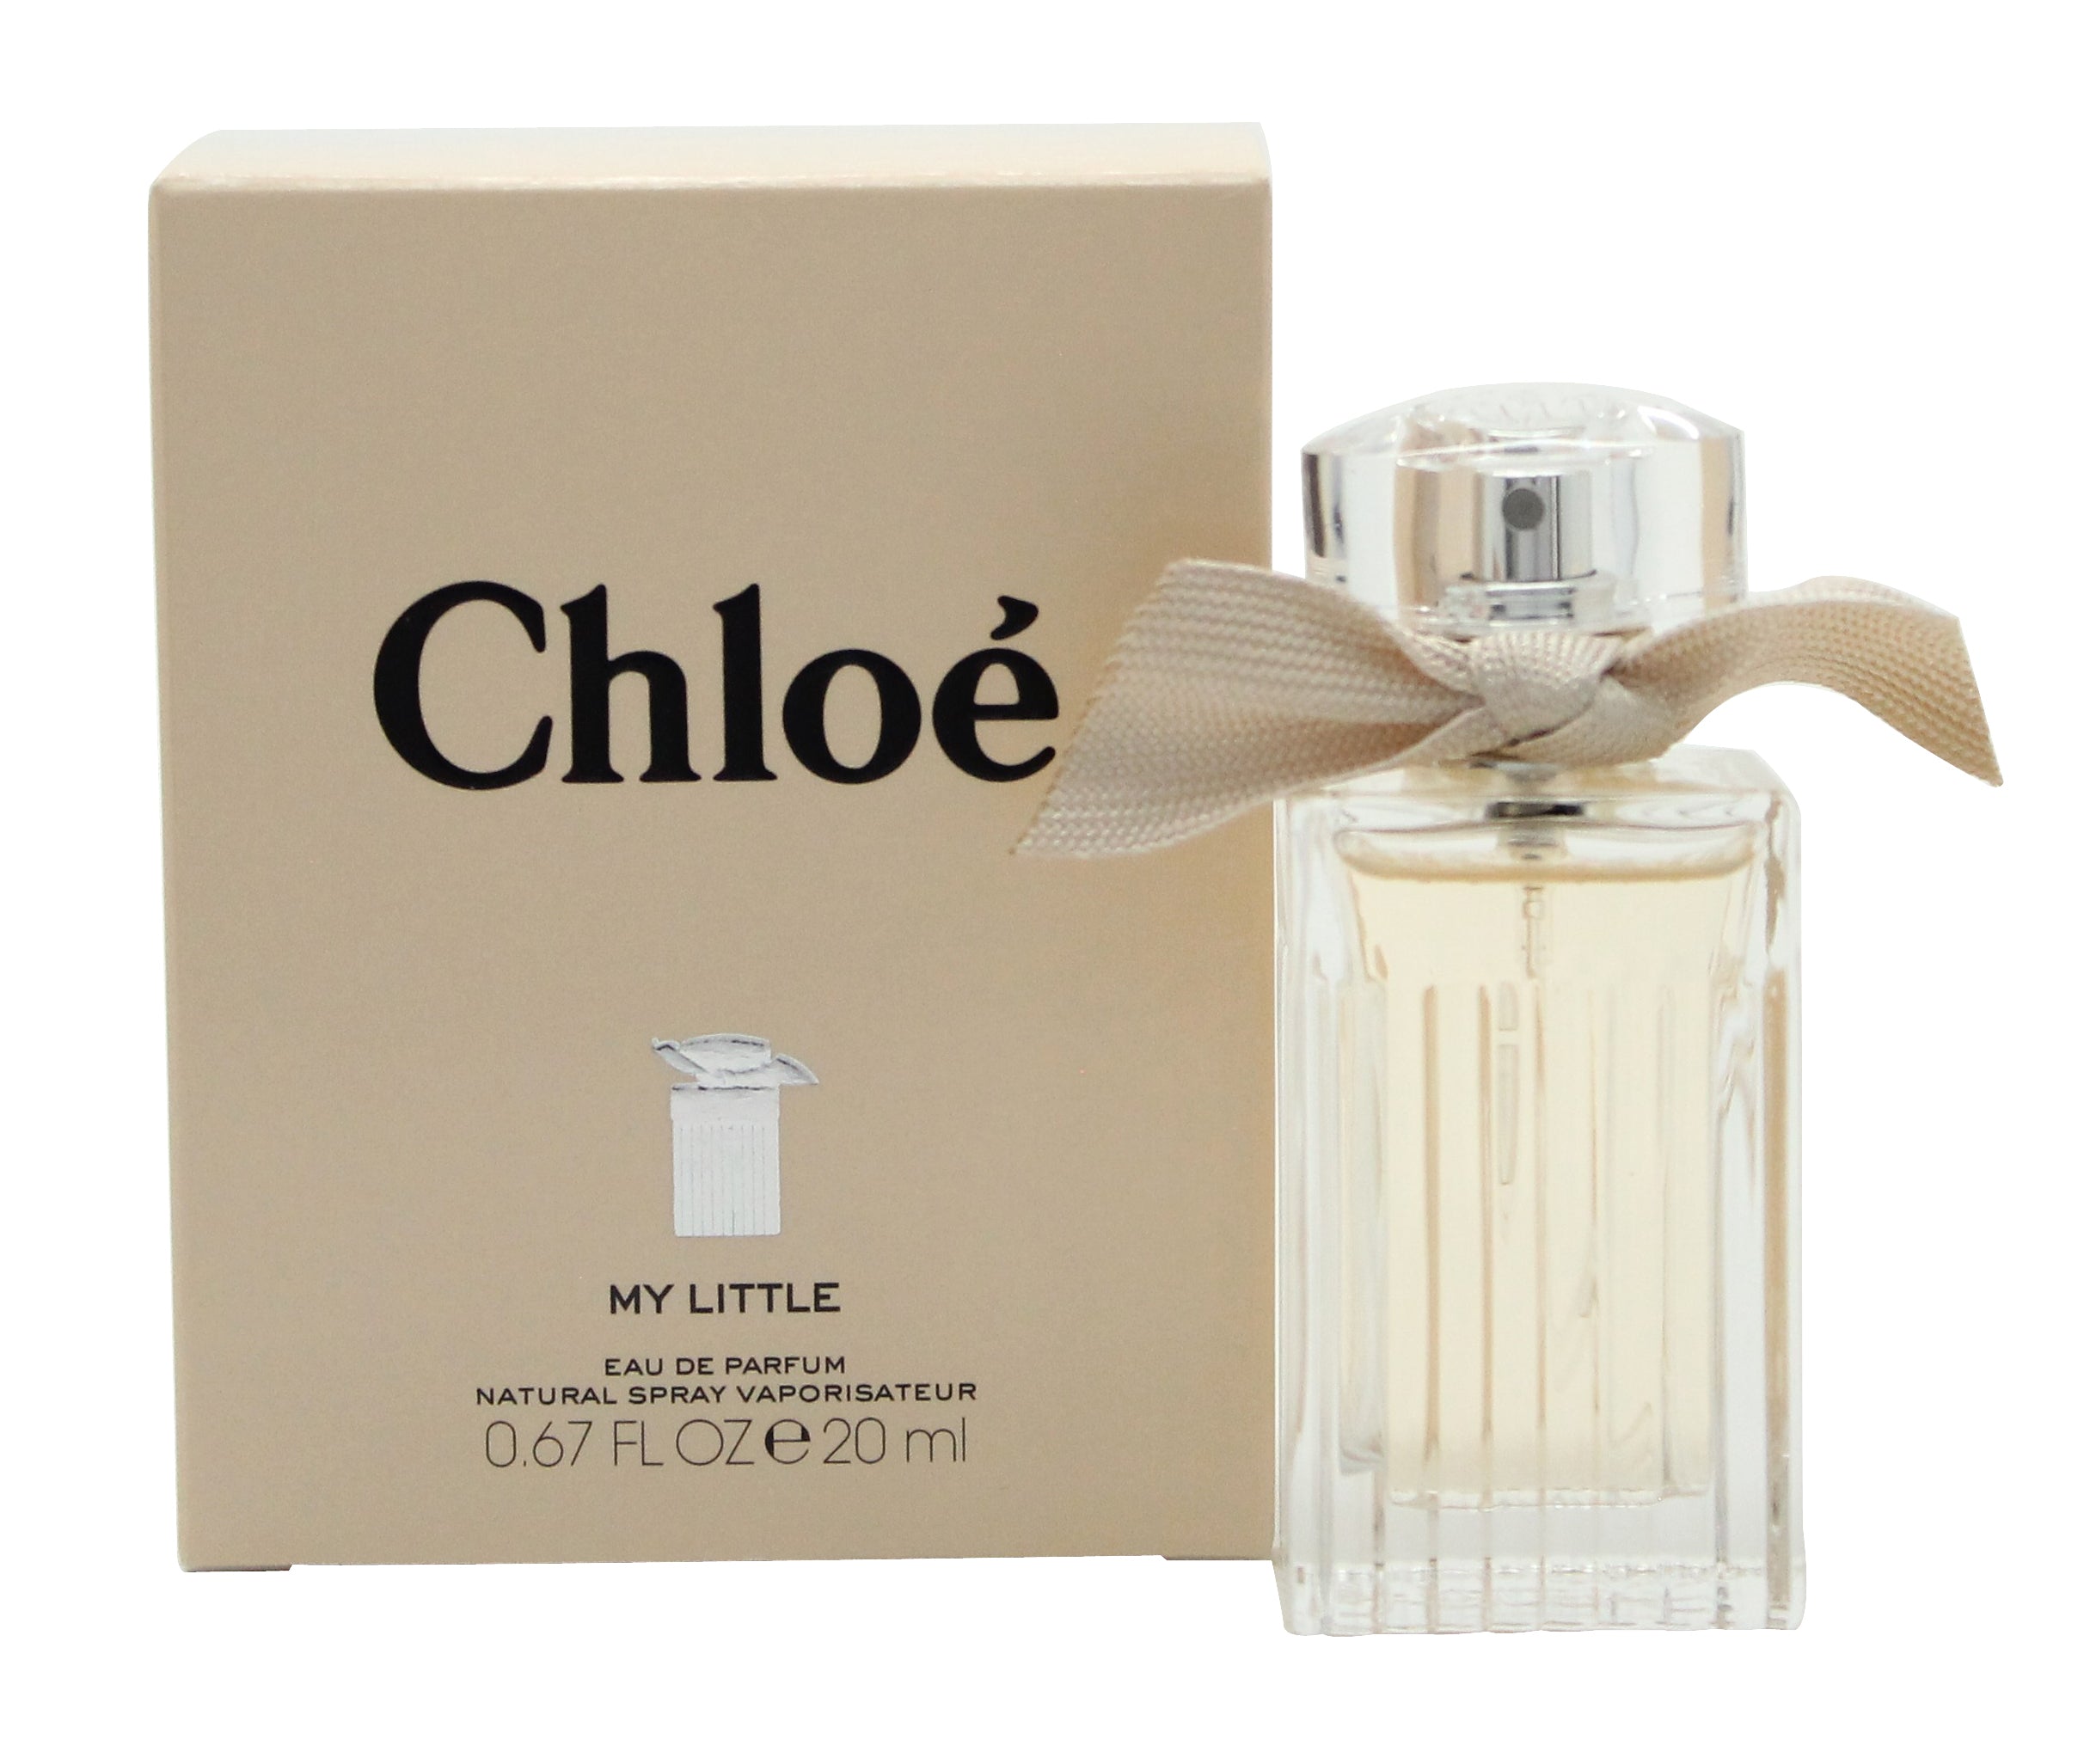 View Chloé Signature Eau de Parfum My Little 20ml Spray information